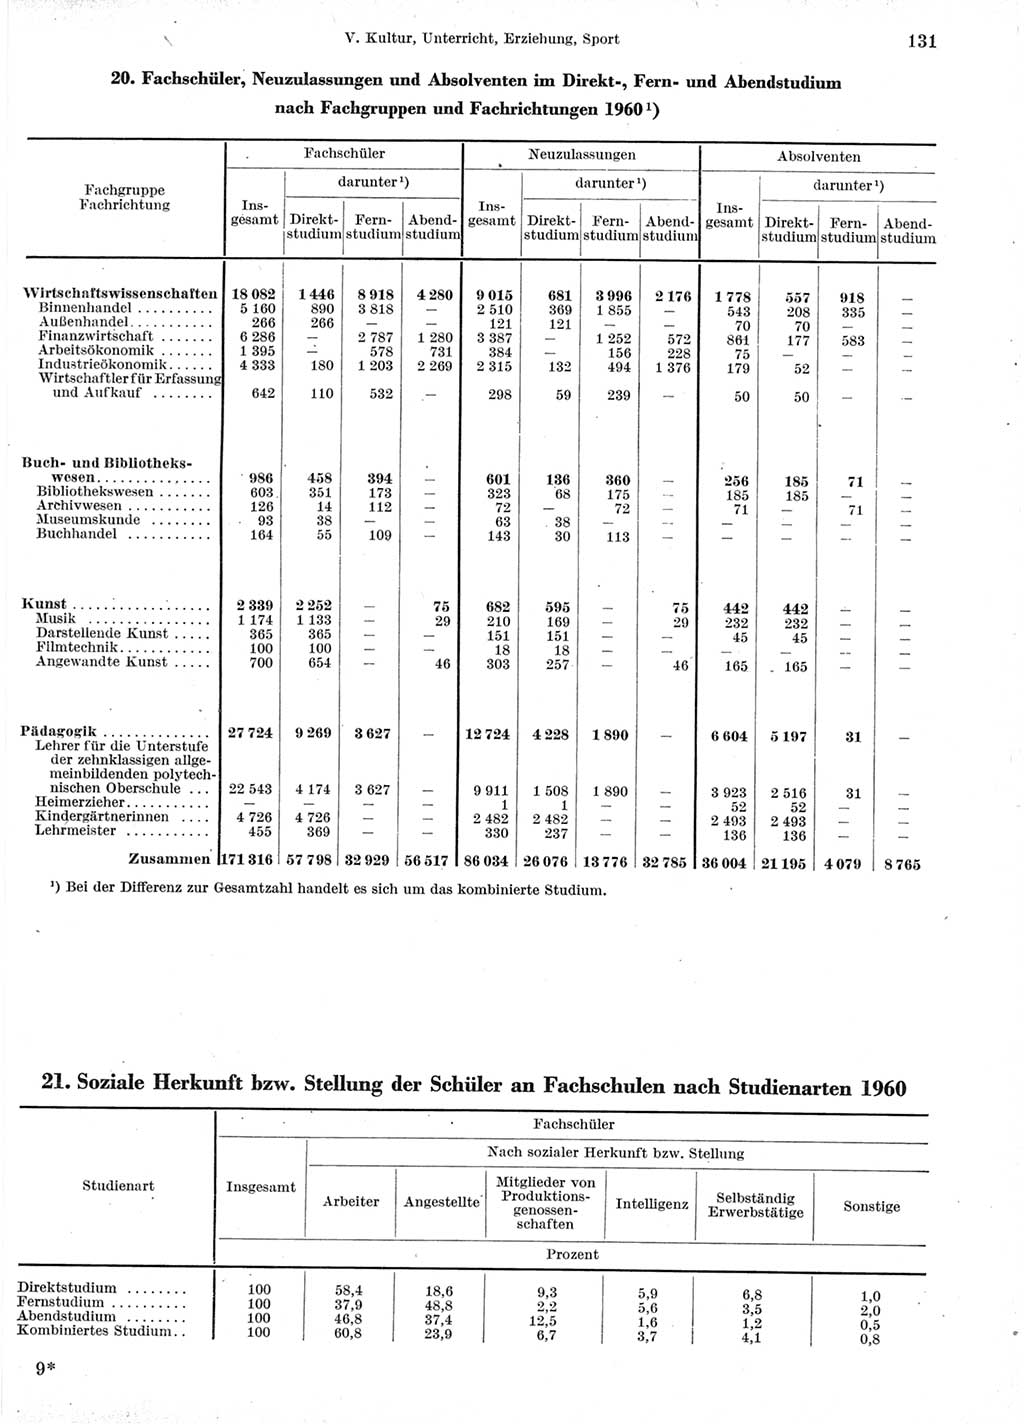 Statistisches Jahrbuch der Deutschen Demokratischen Republik (DDR) 1960-1961, Seite 131 (Stat. Jb. DDR 1960-1961, S. 131)